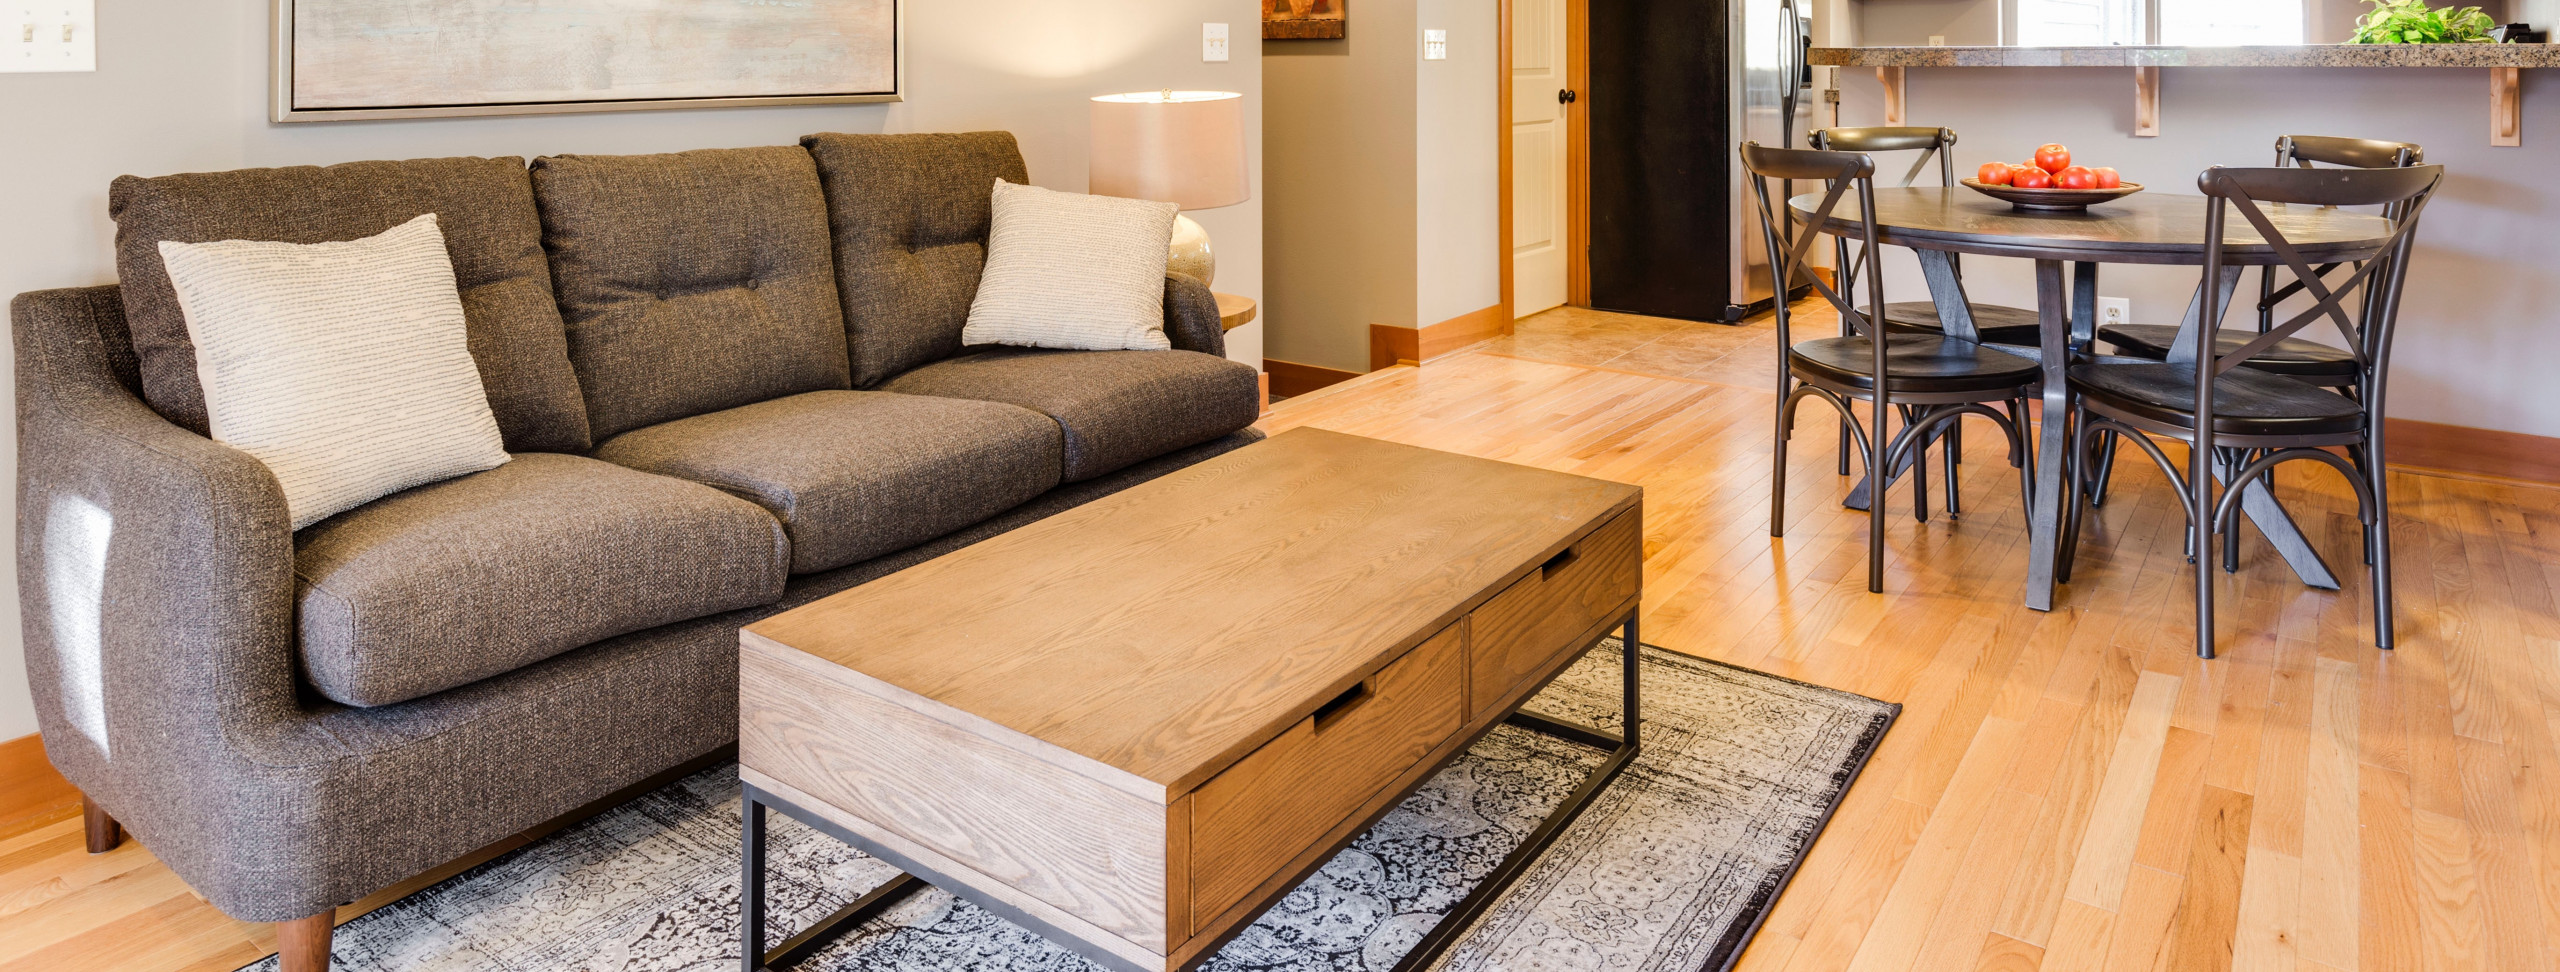 piso-laminado-madeira-amadeirado-sala-estar-sofa-decoracao-ambiente-estilo-aconchegante